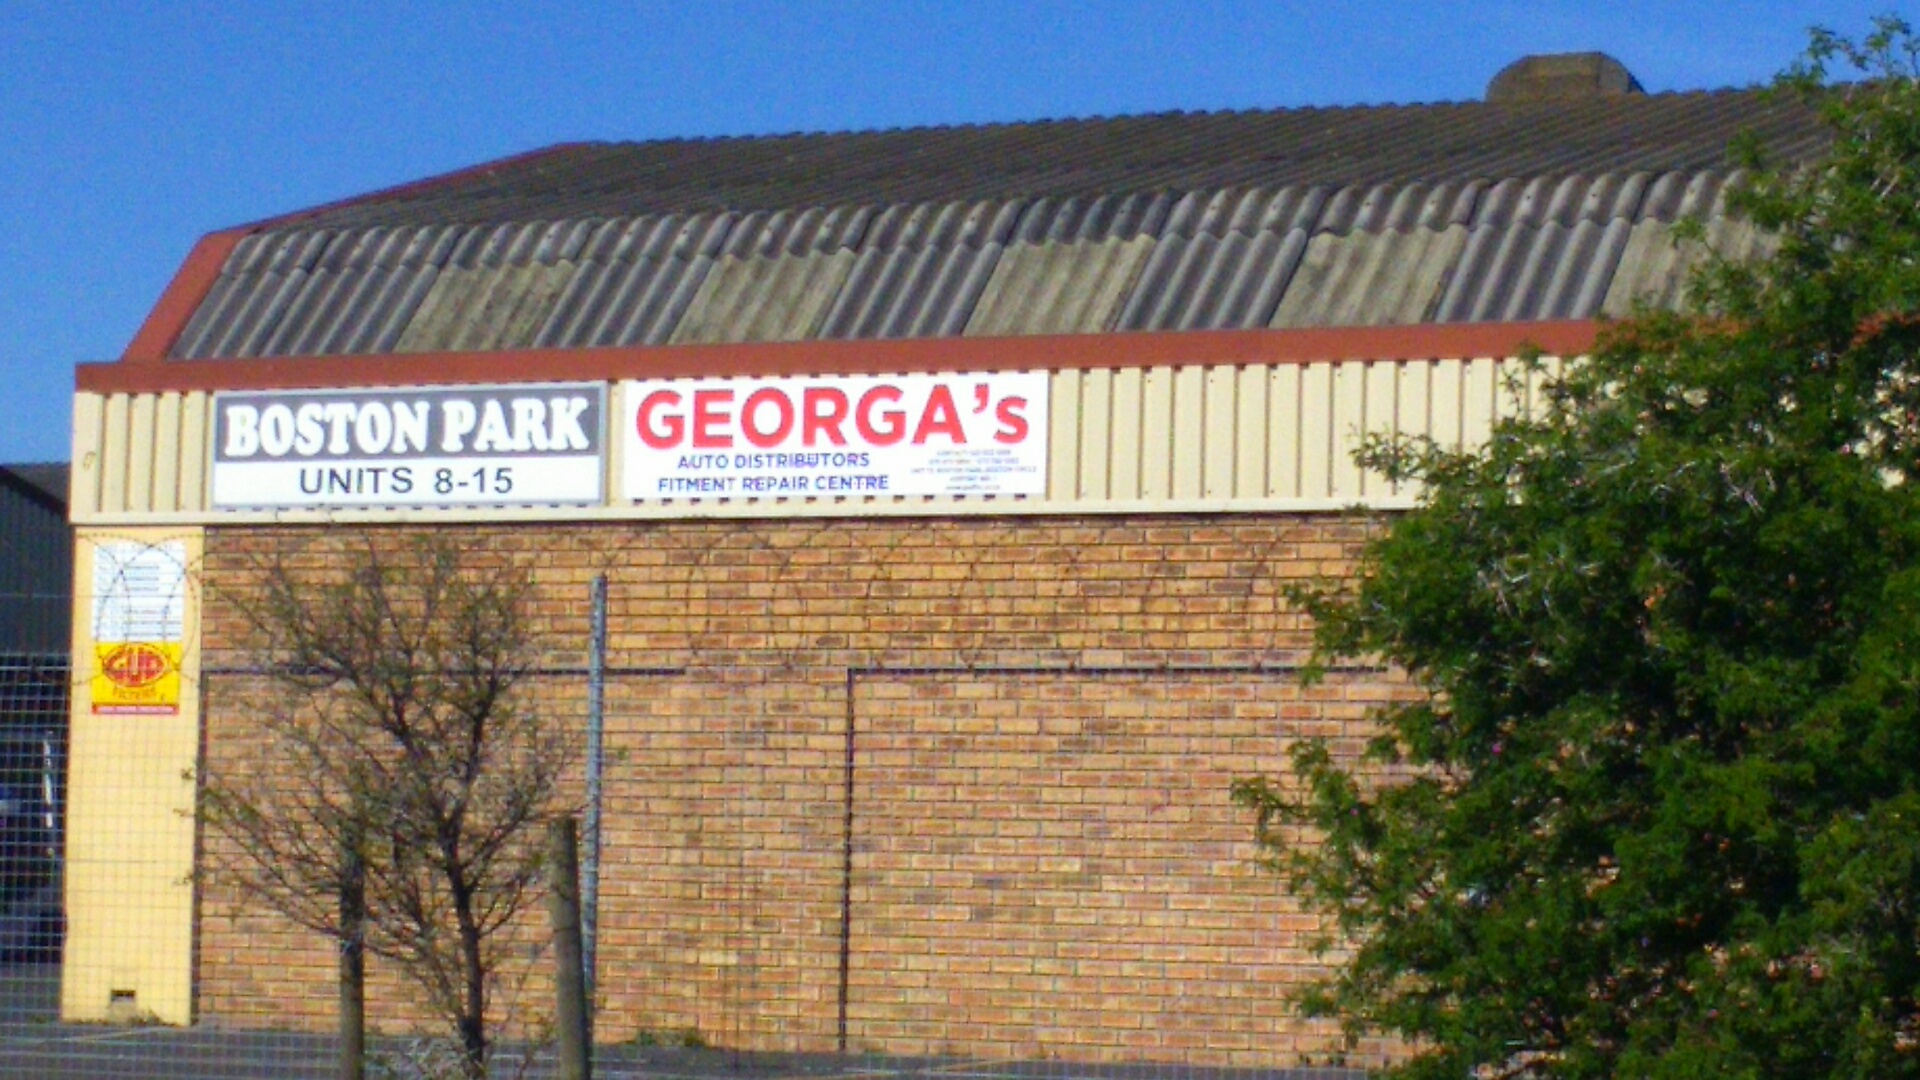 Georga’s Auto Dist, Fitment Repair Center